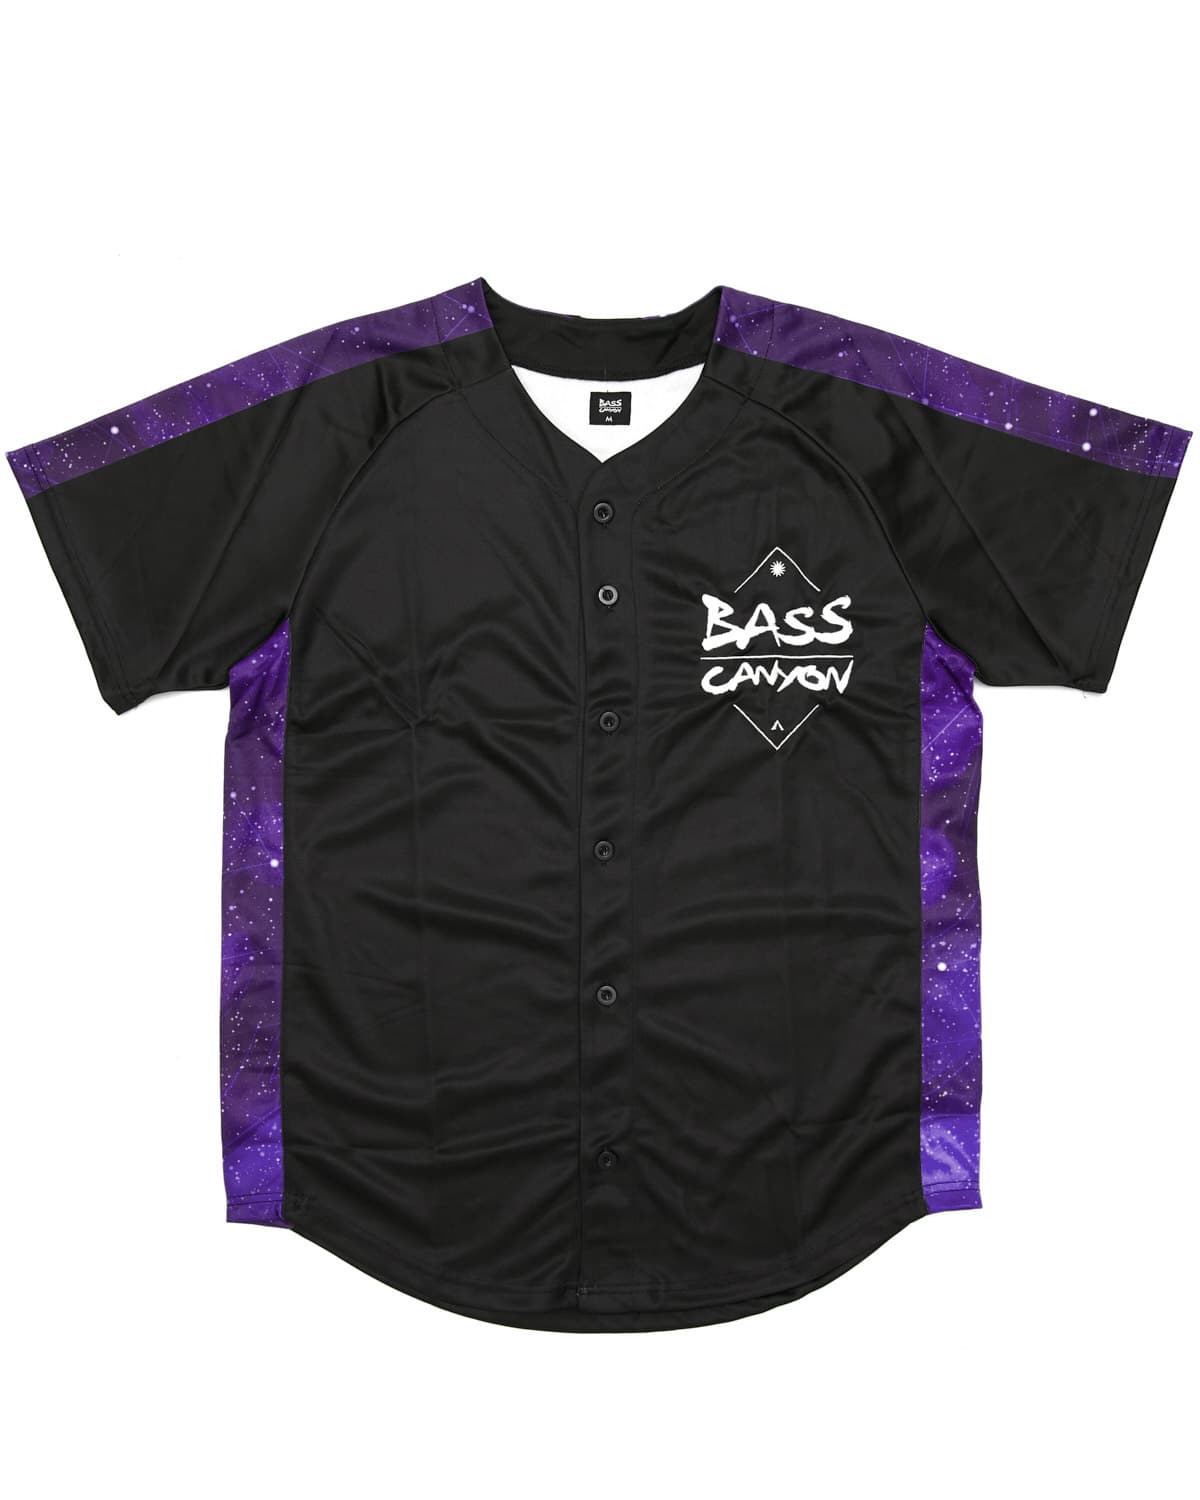 Bass Canyon' Baseball Jersey - Black/Purple